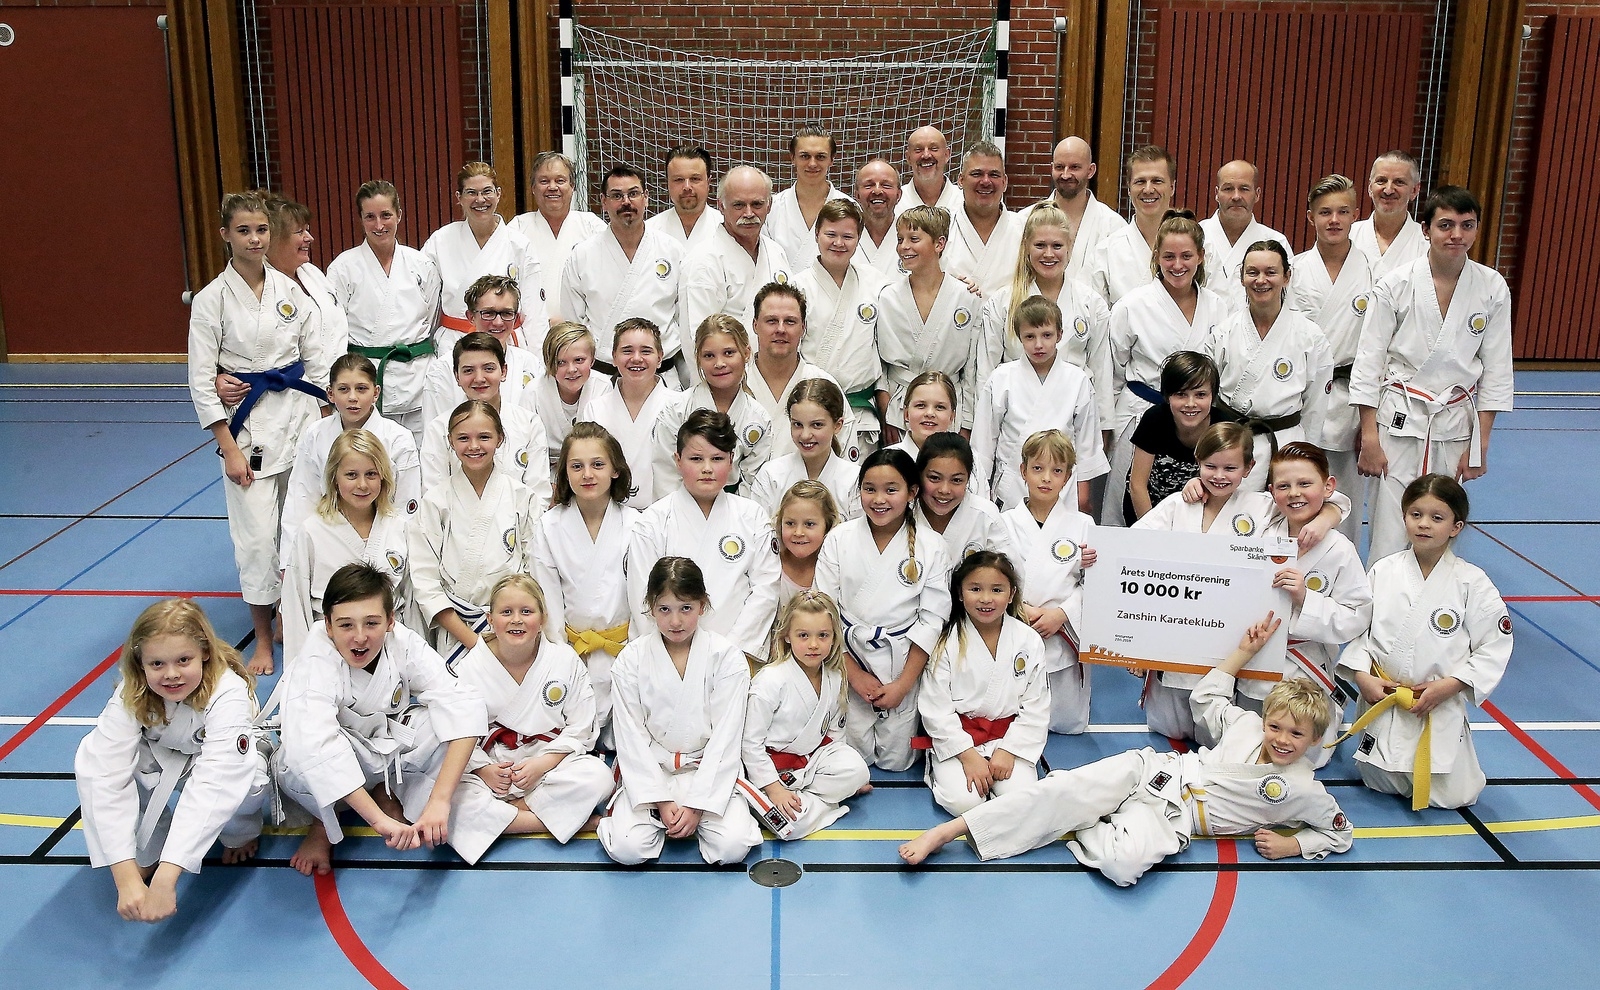 Zanshin Karateklubb prisades på Nordöstra Skånes Idrottsgala som en av de tre bästa ungdomsföreningarna. Det blev en fin andraplats för klubben som bildades 1998. Foto: Stefan Sandström